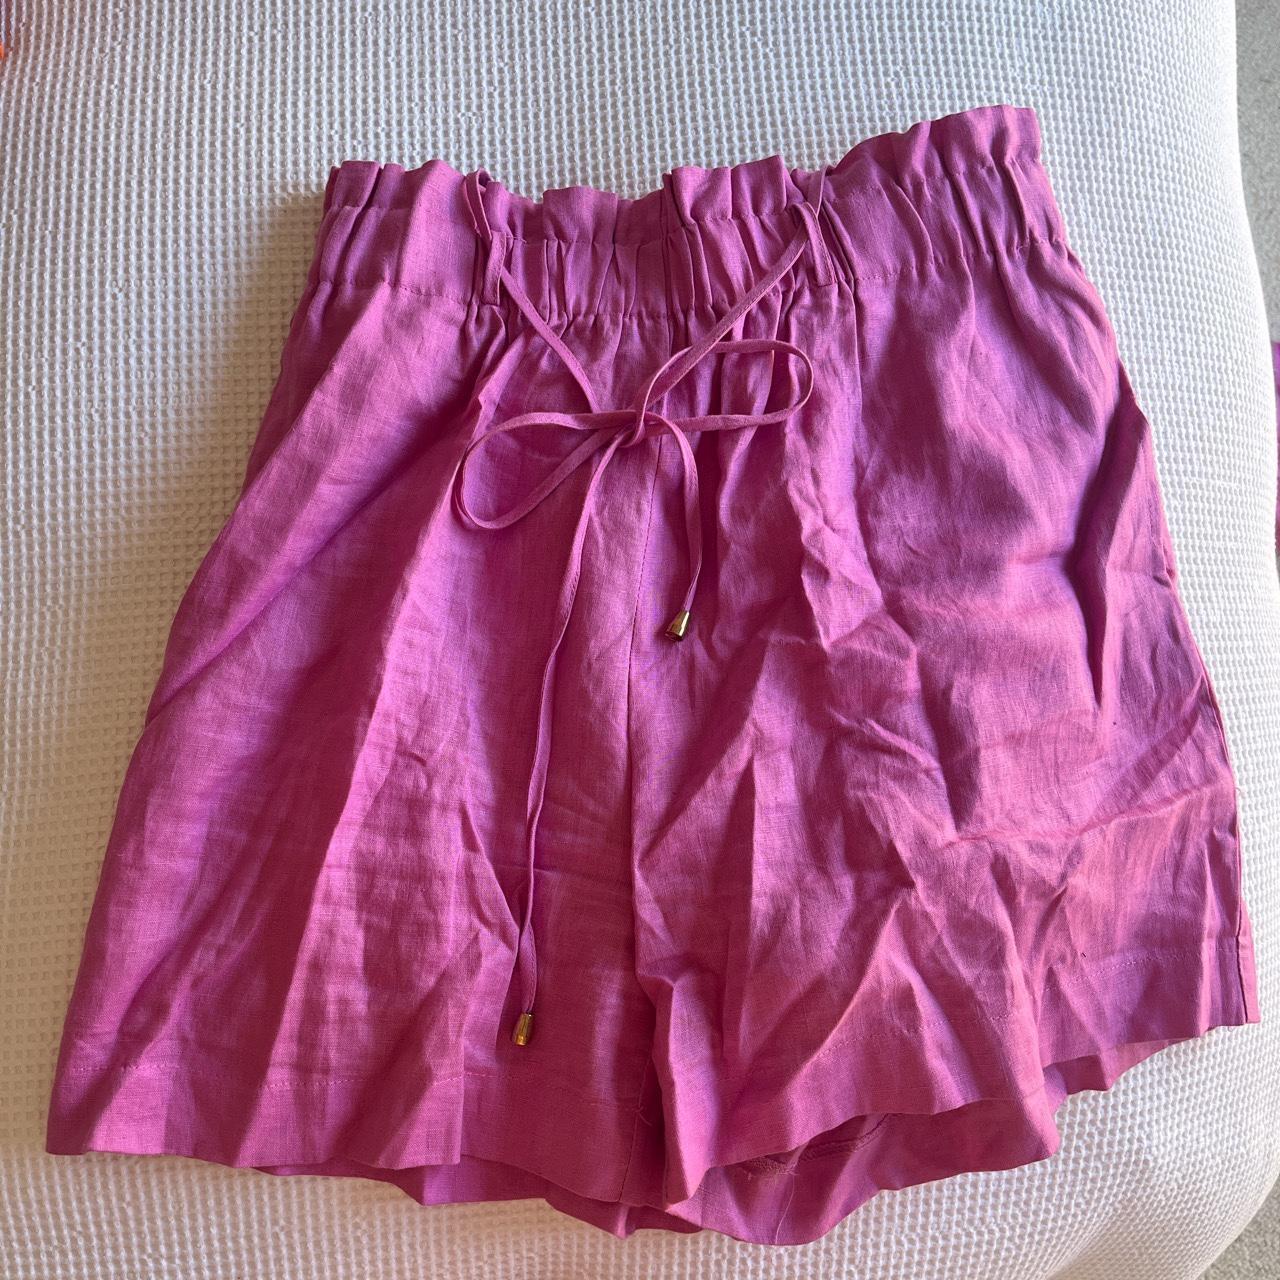 Luxe linen top and short set Pink / purple in... - Depop